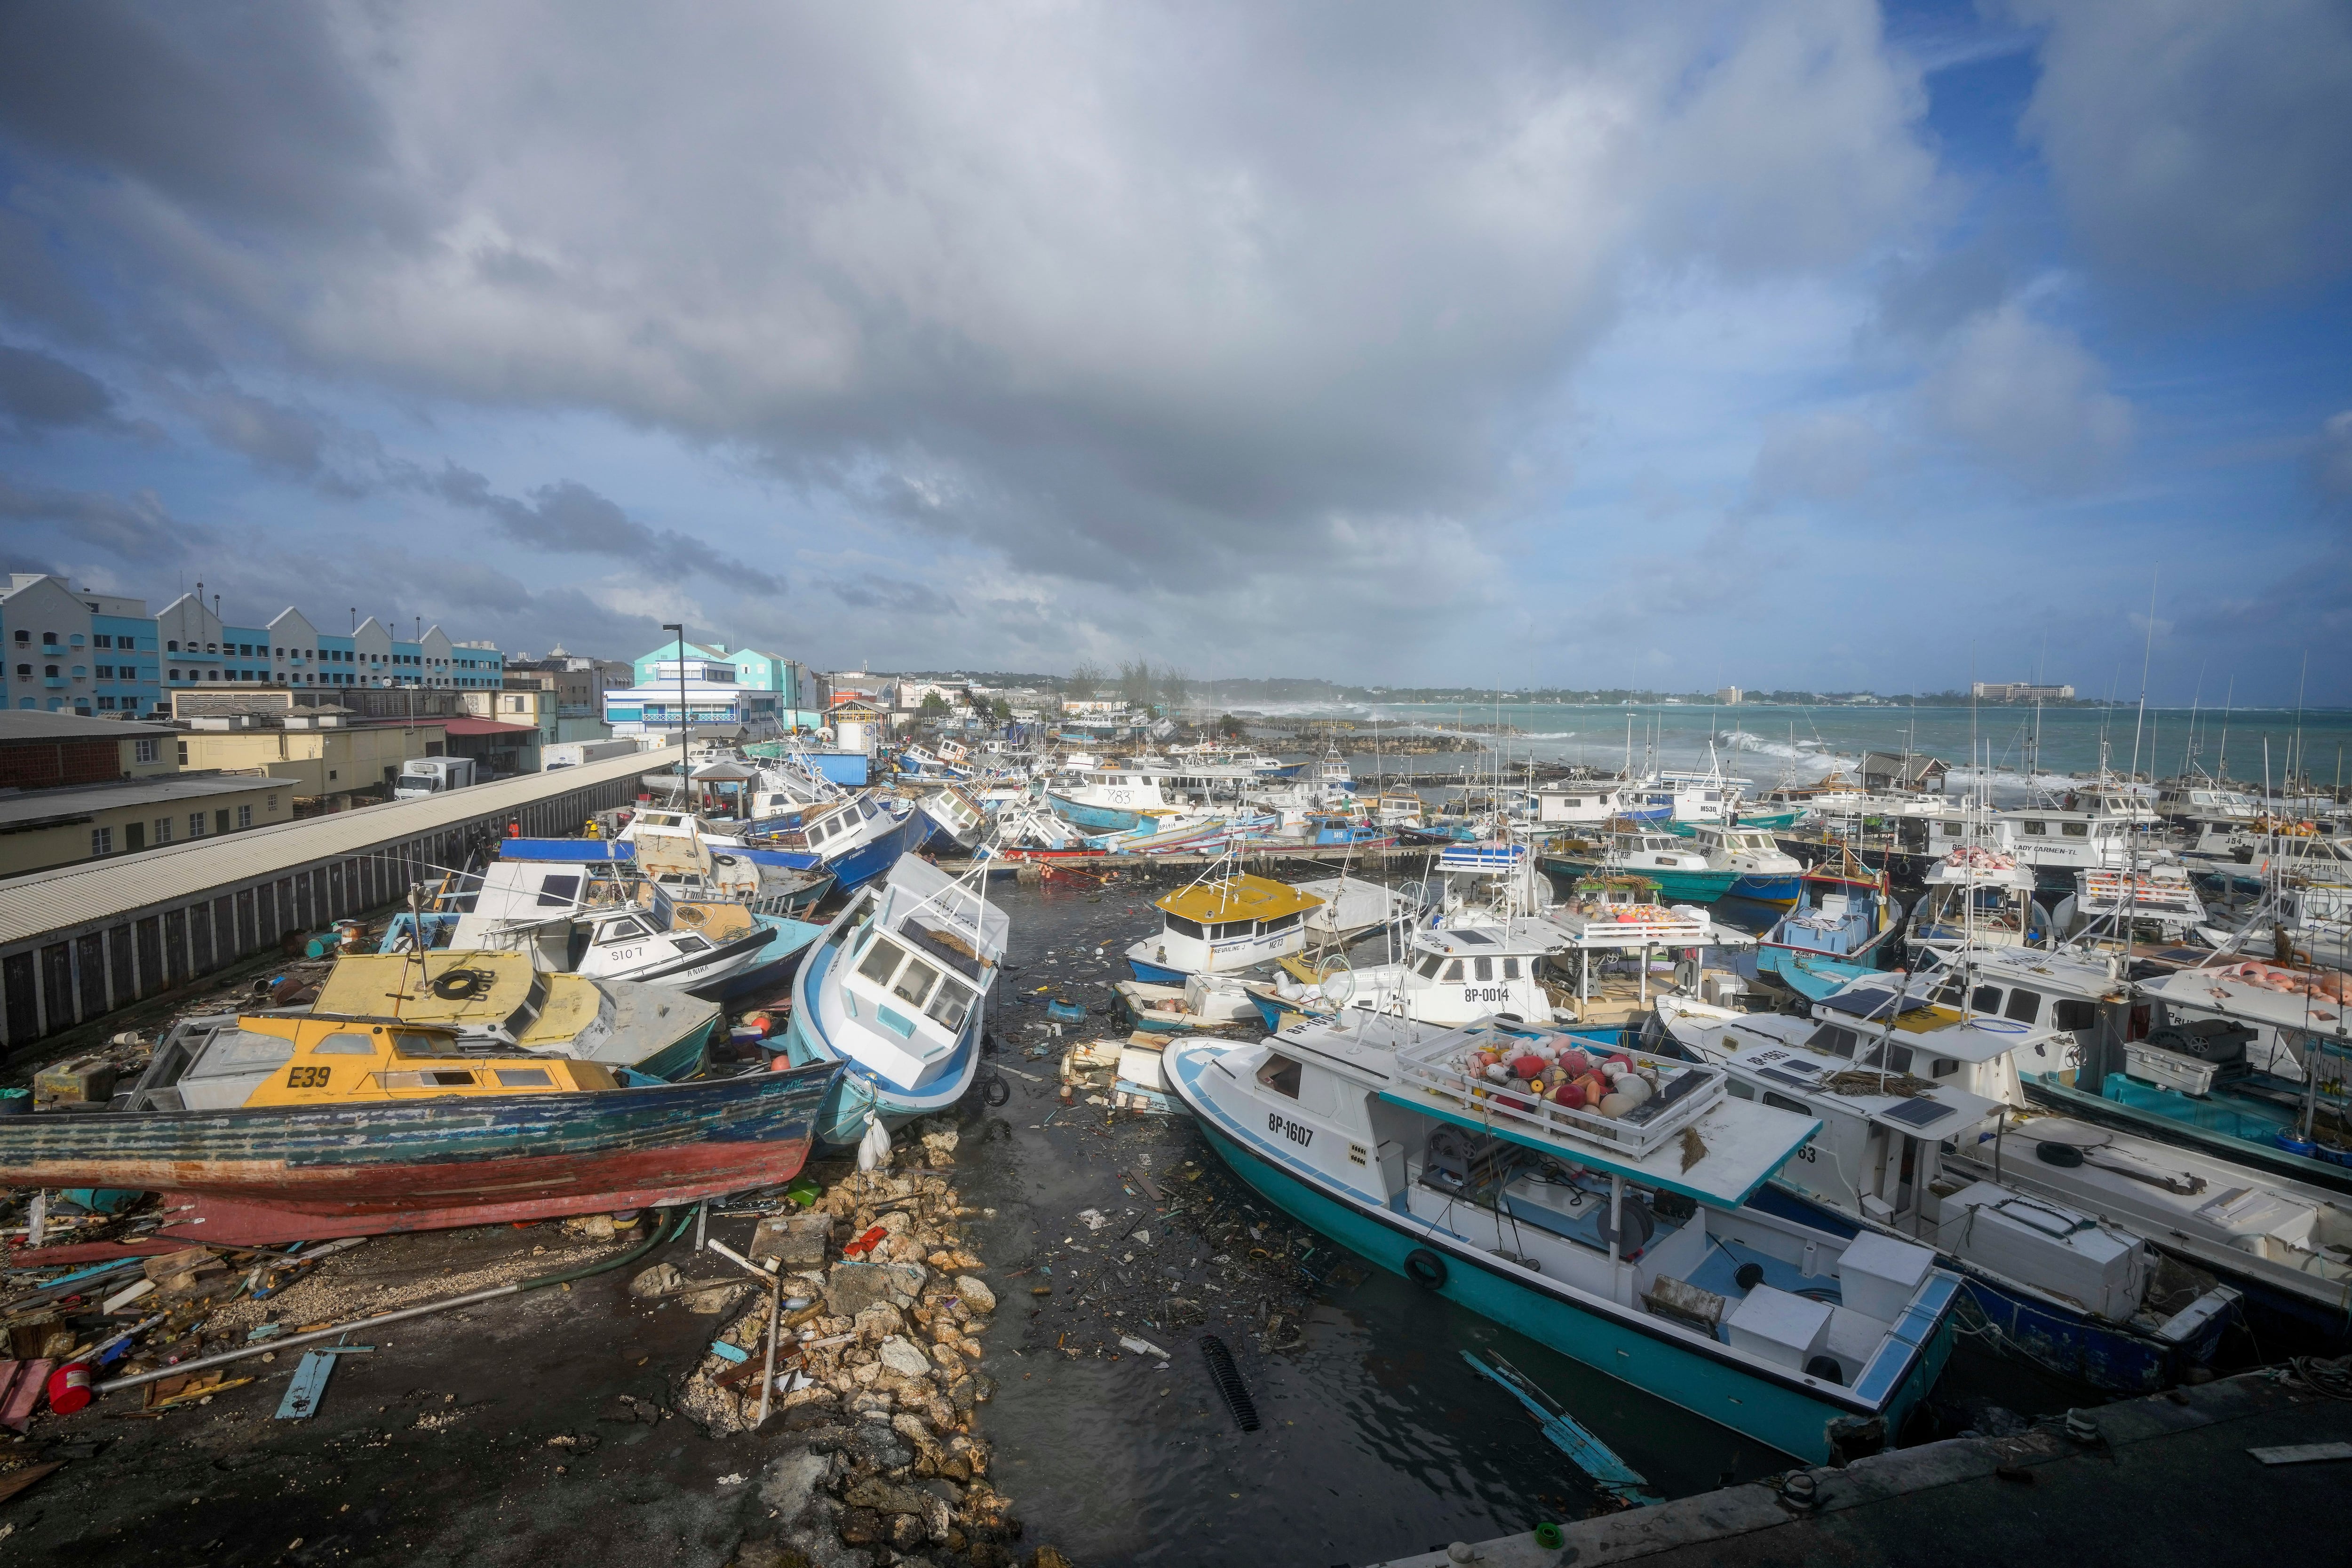 Huracán ‘Beryl’ en fotos y videos: Así luce el ‘catastrófico’ ciclón que viene a México